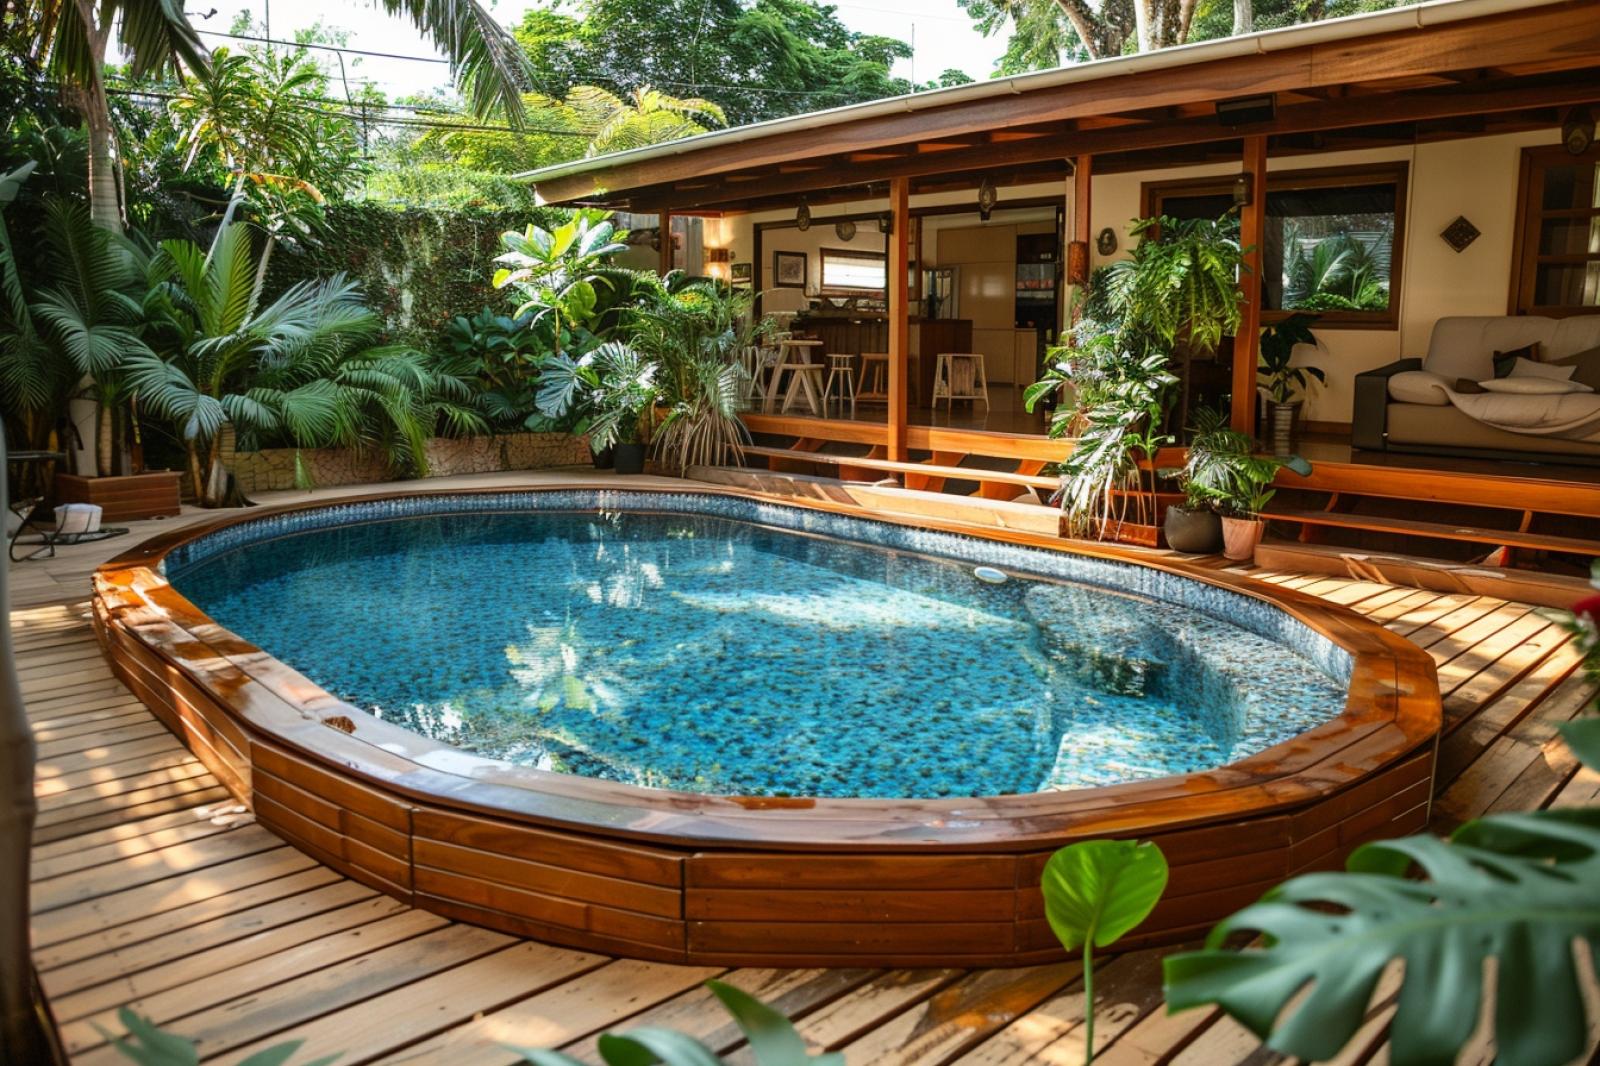 Comment intégrer une piscine hors sol bois avec terrasse dans votre jardin ?